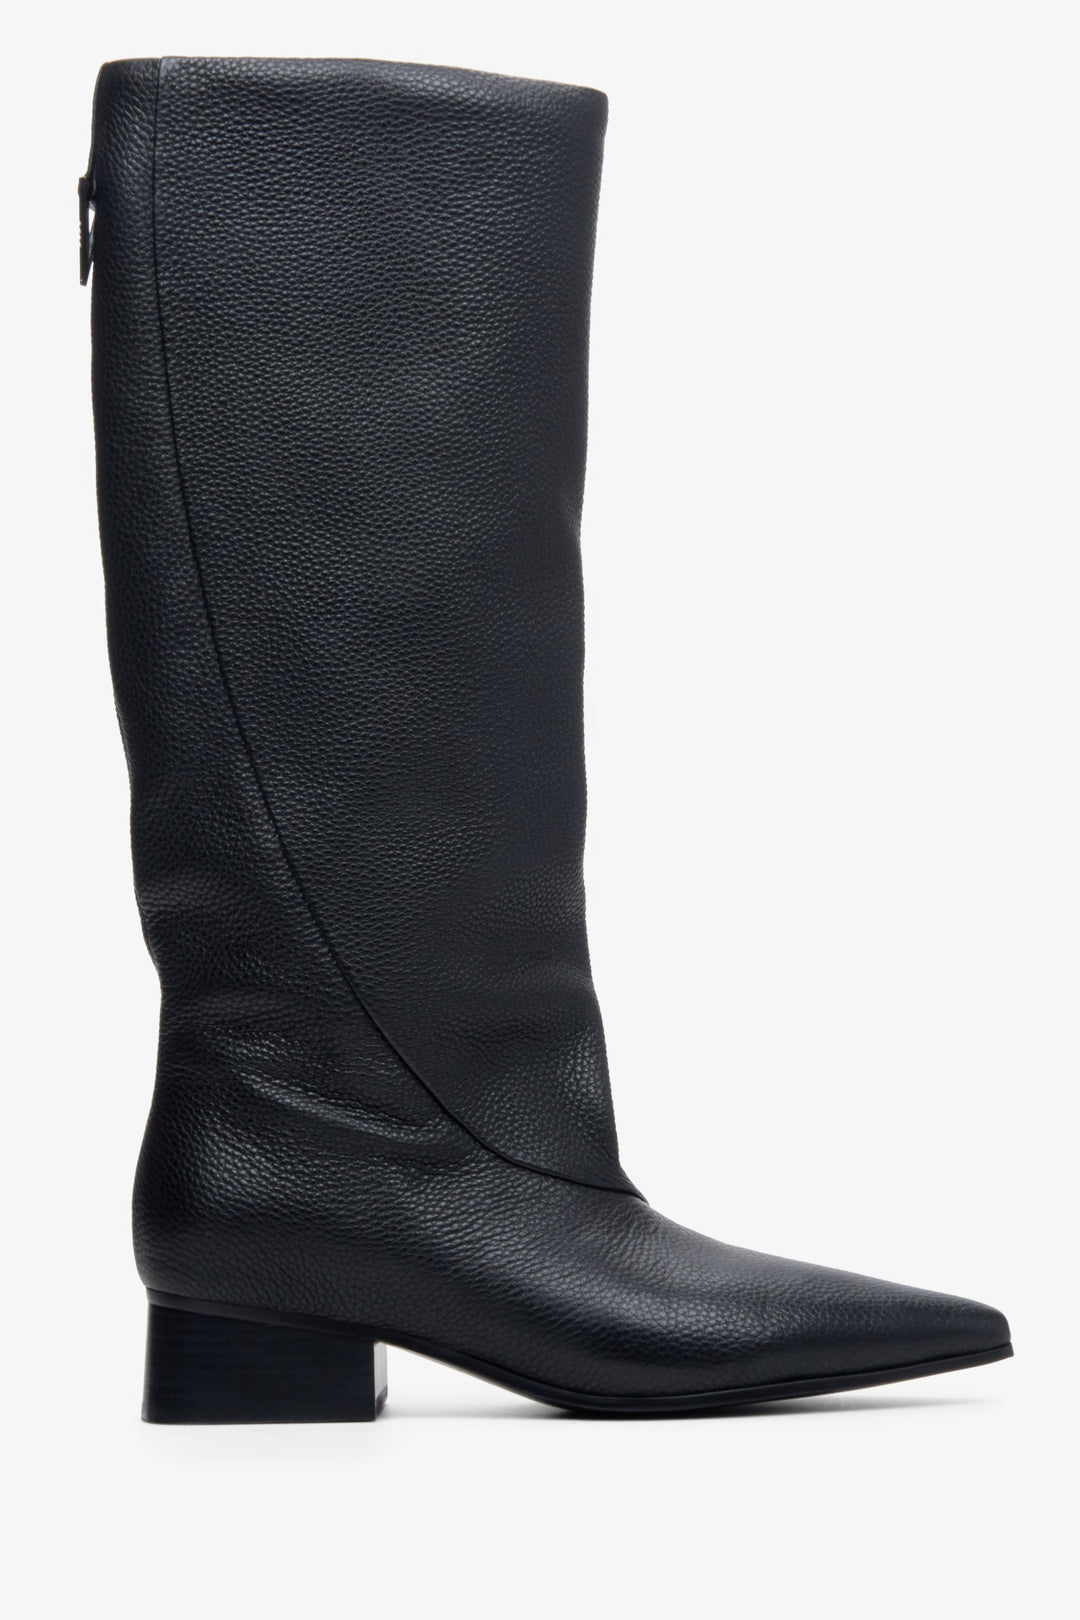 Women's black Estro leather boots - shoe profile.